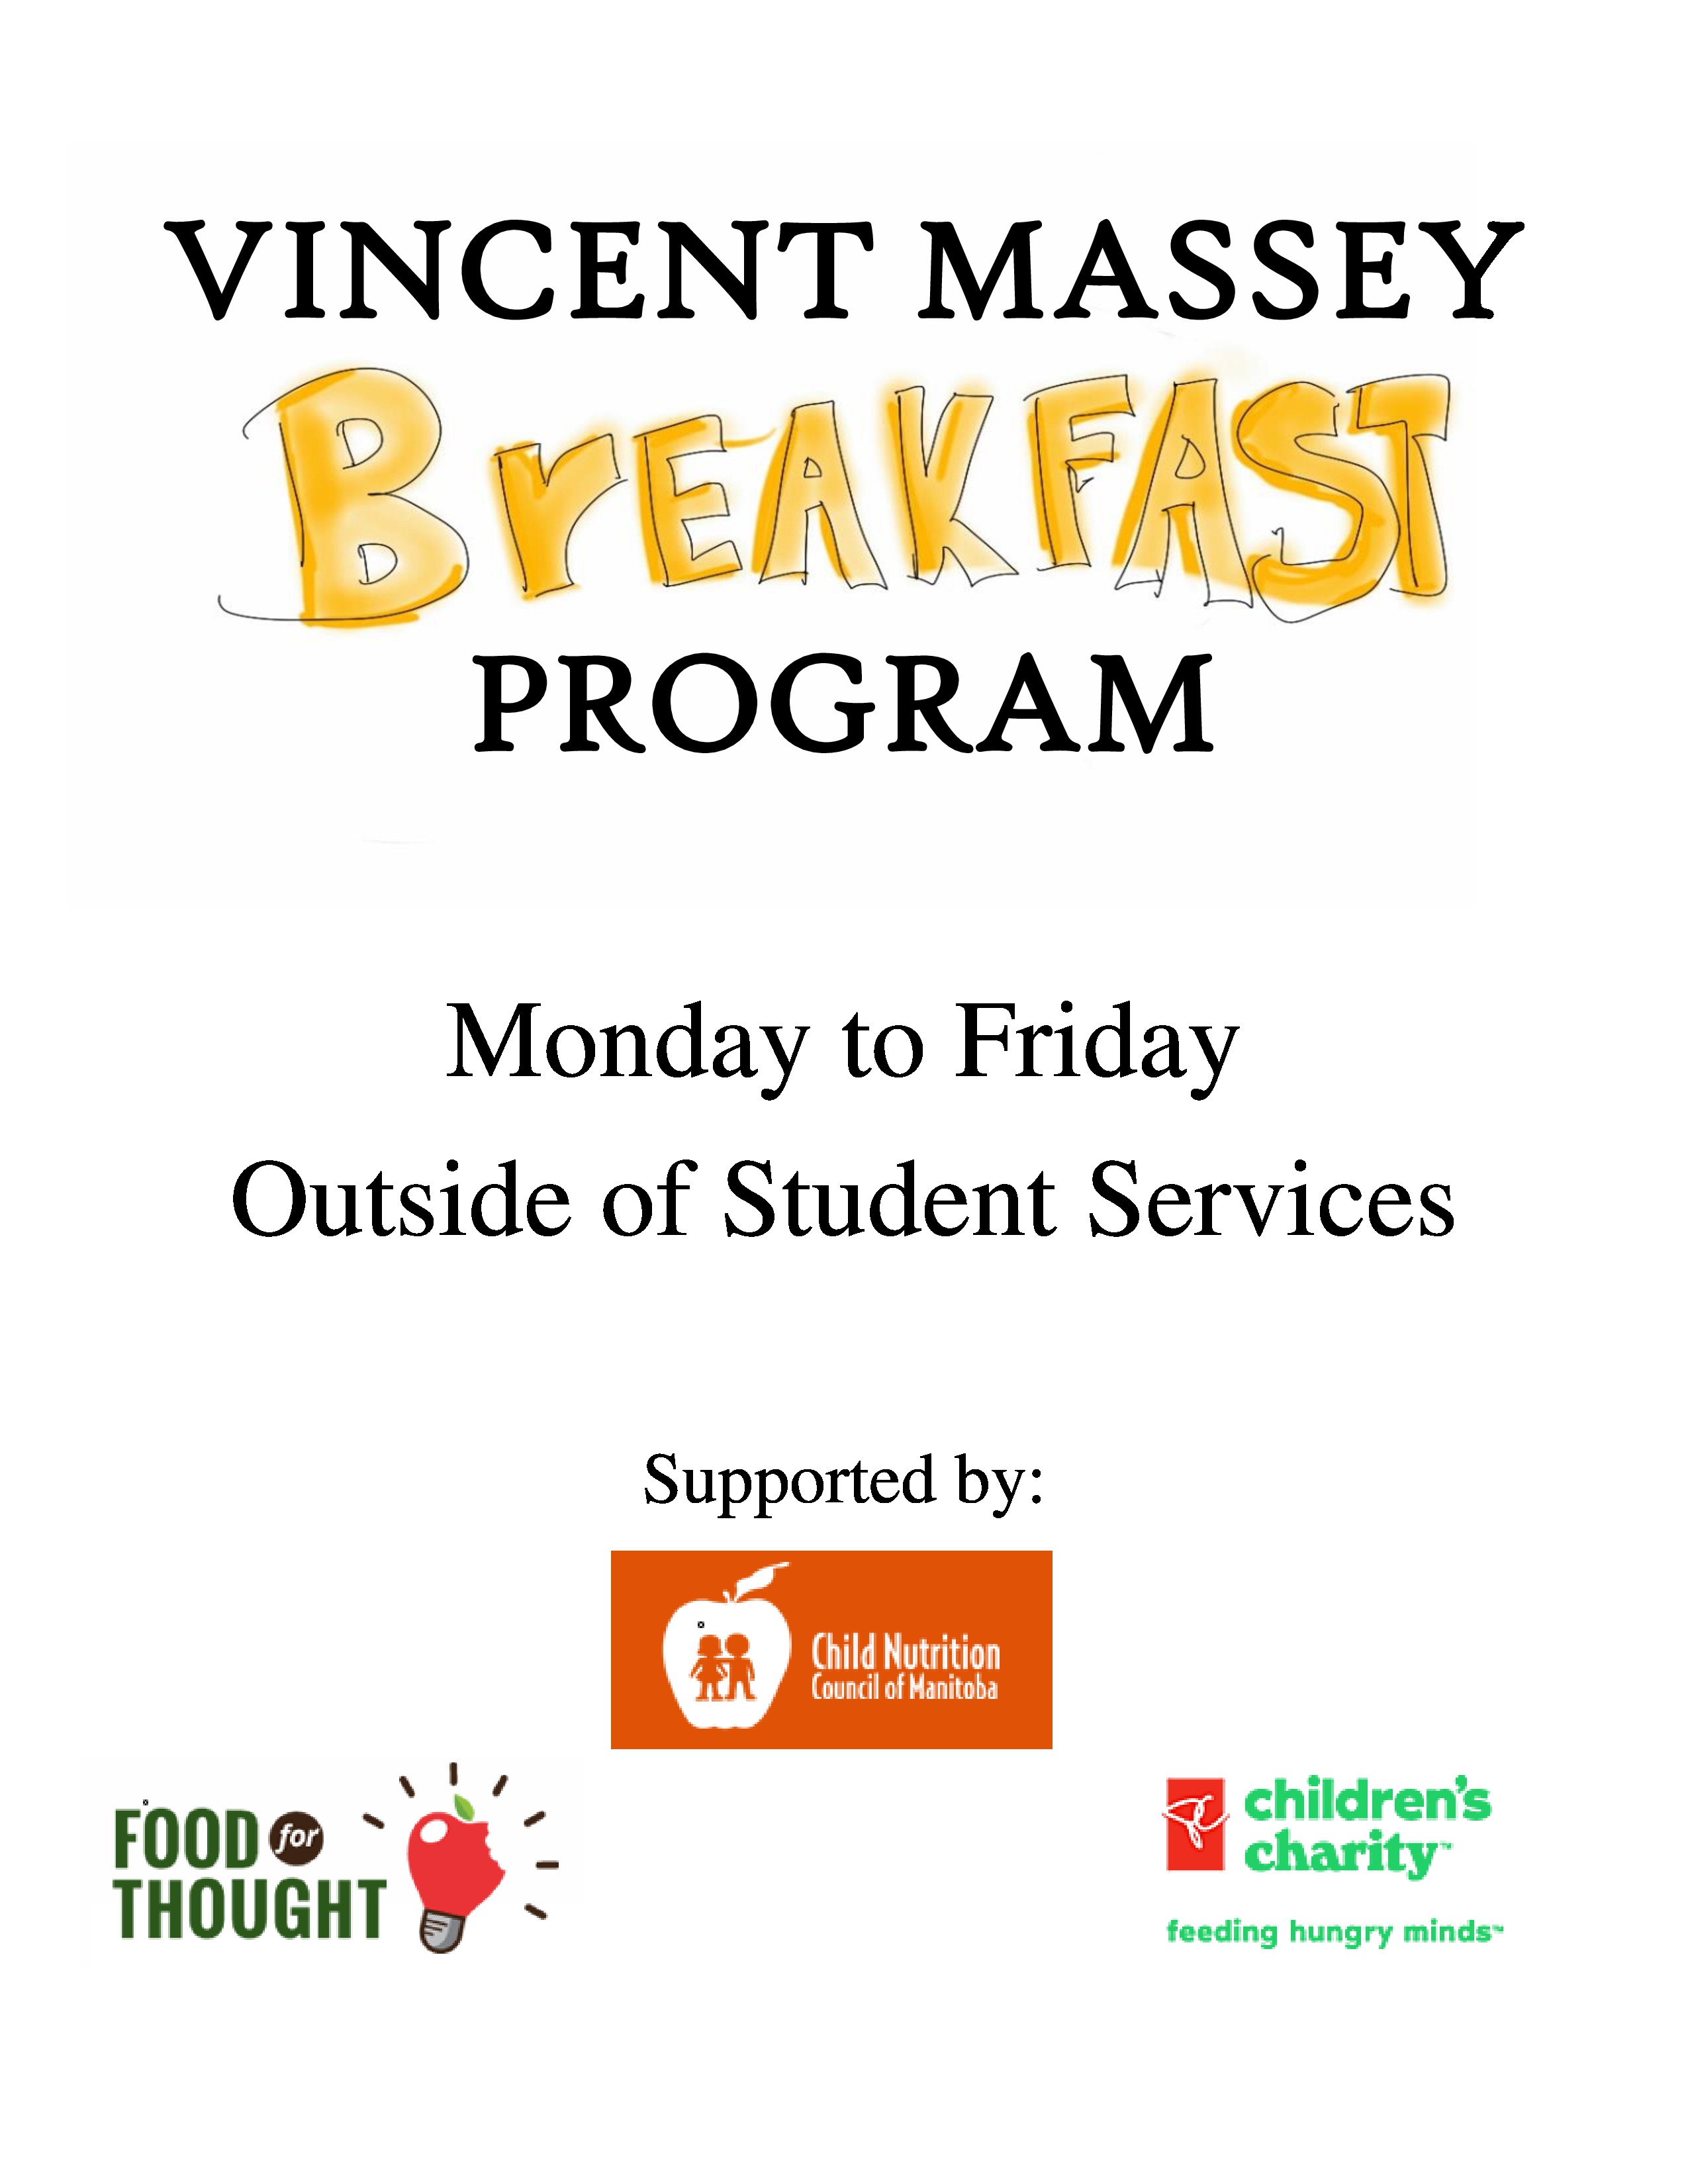 Breakfast Program Poster (Sept 2019)-page-0.jpg